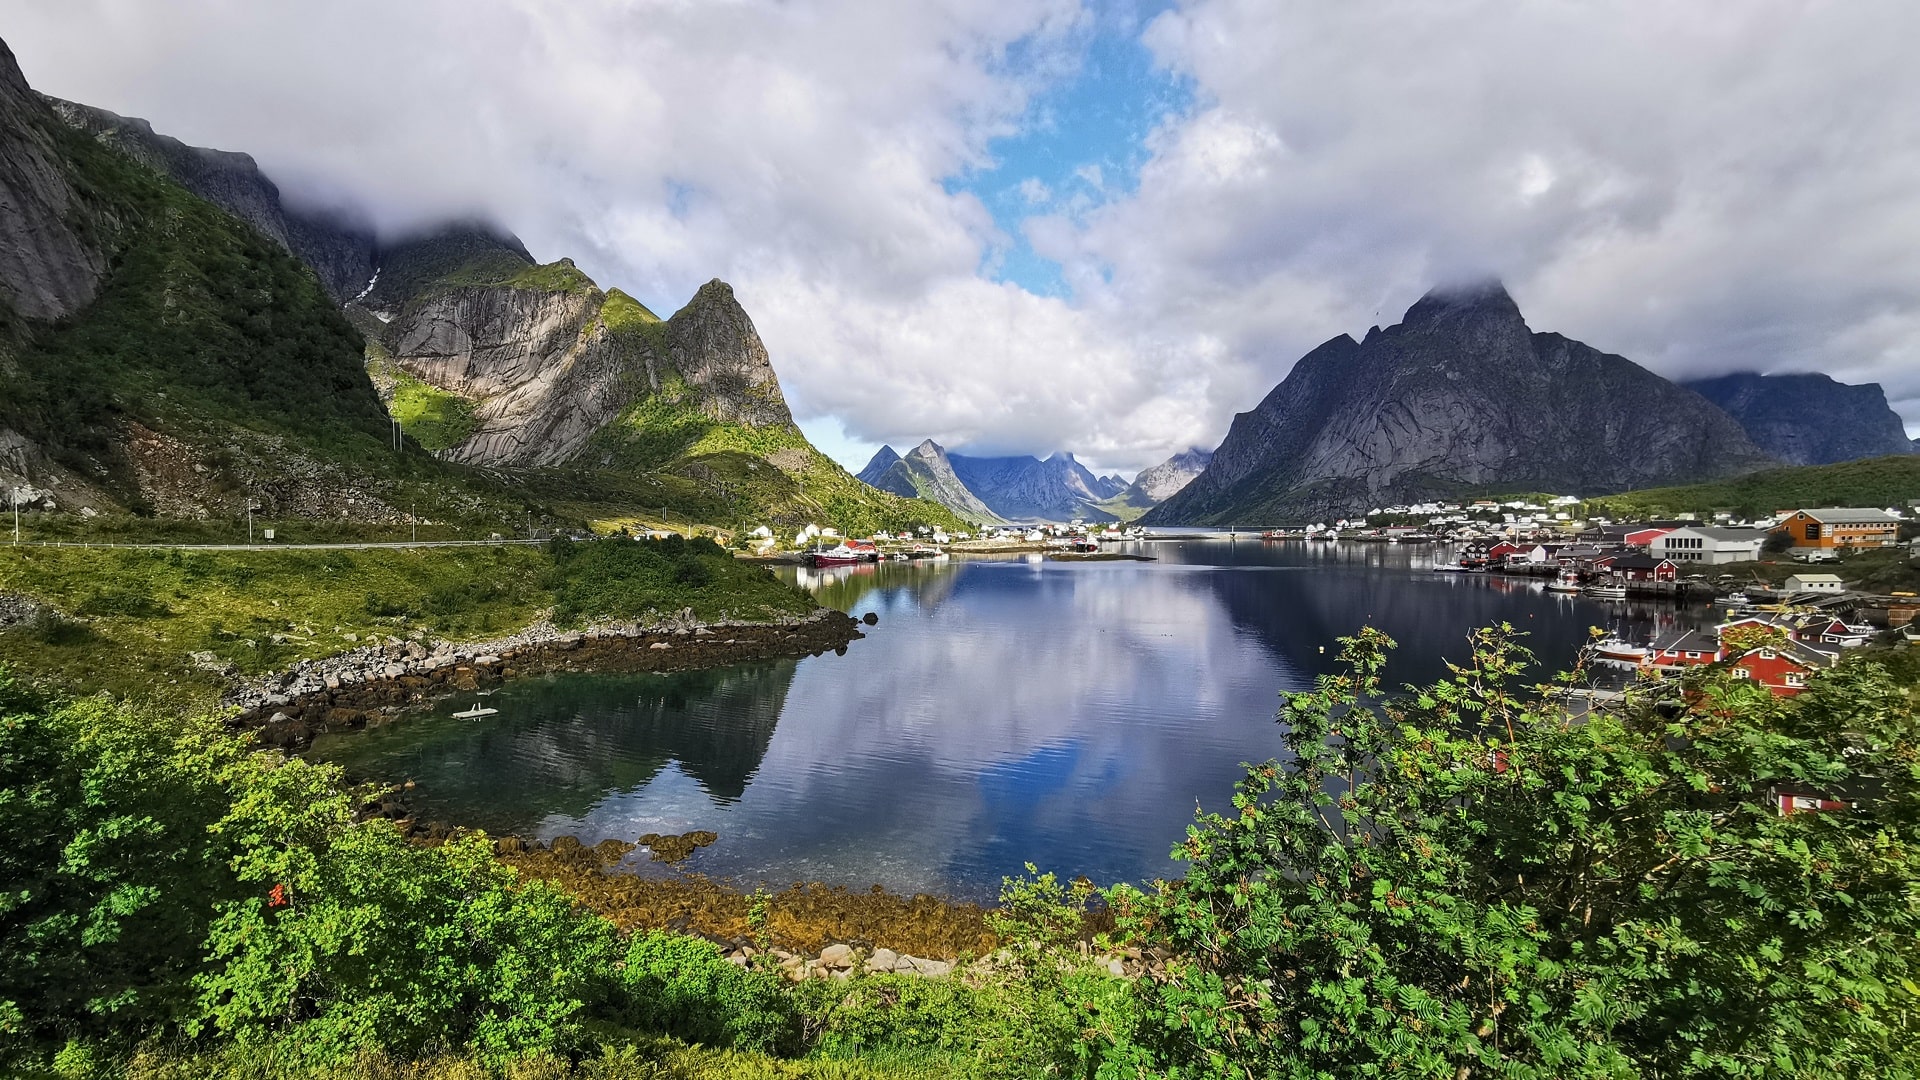 Verträumte Gravdalsbukta in Reine: Idyllische Bucht umgeben von norwegischer Architektur und majestätischen Bergen